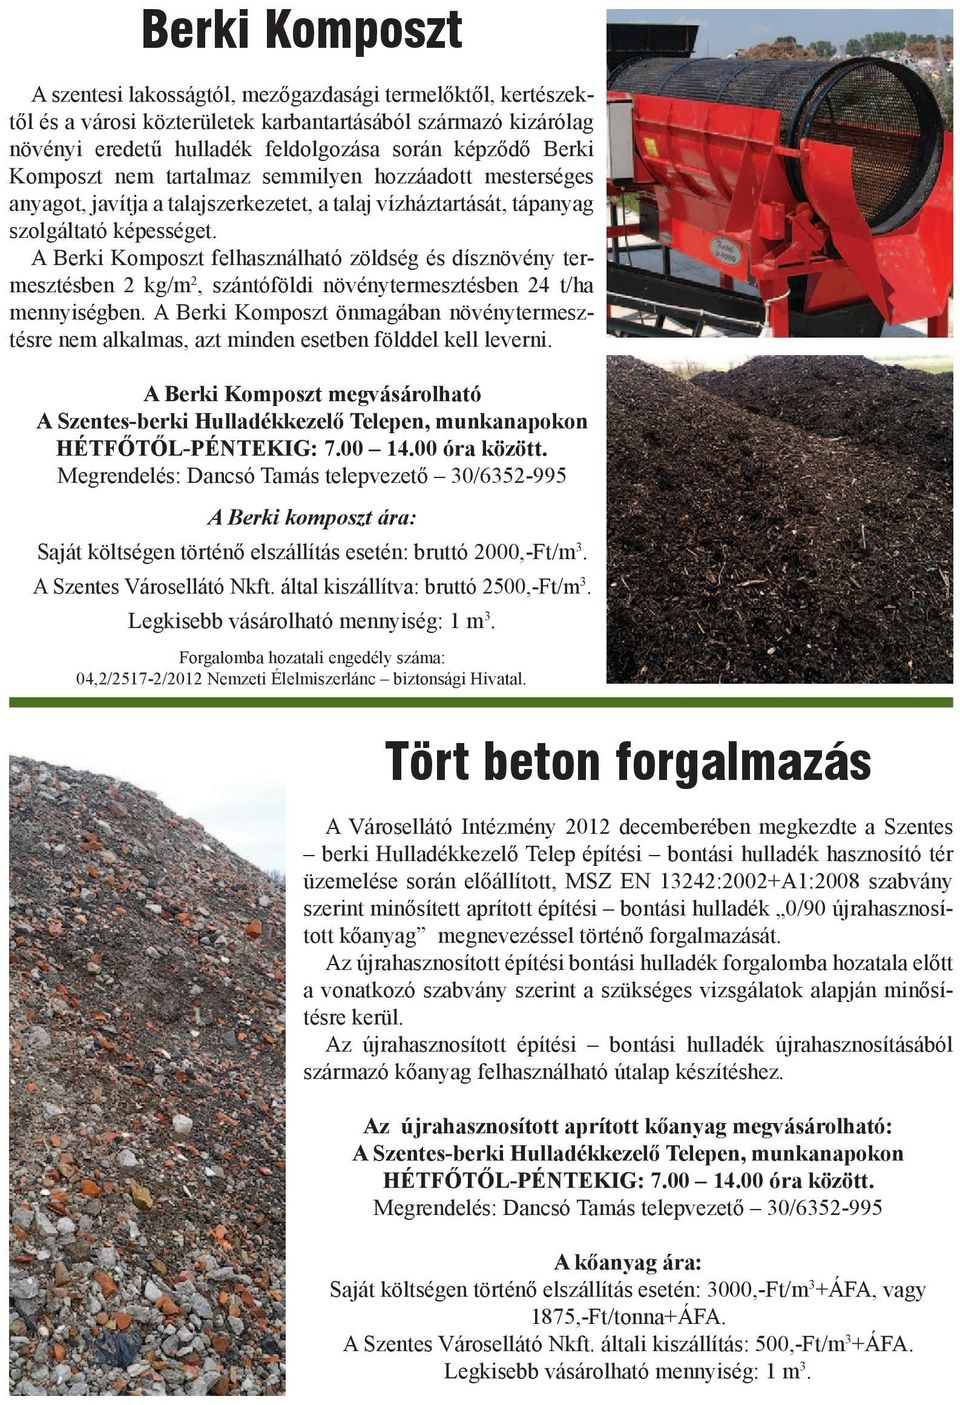 A Berki Komposzt felhasználható zöldség és dísznövény termesztésben 2 kg/m 2, szántóföldi növénytermesztésben 24 t/ha mennyiségben.